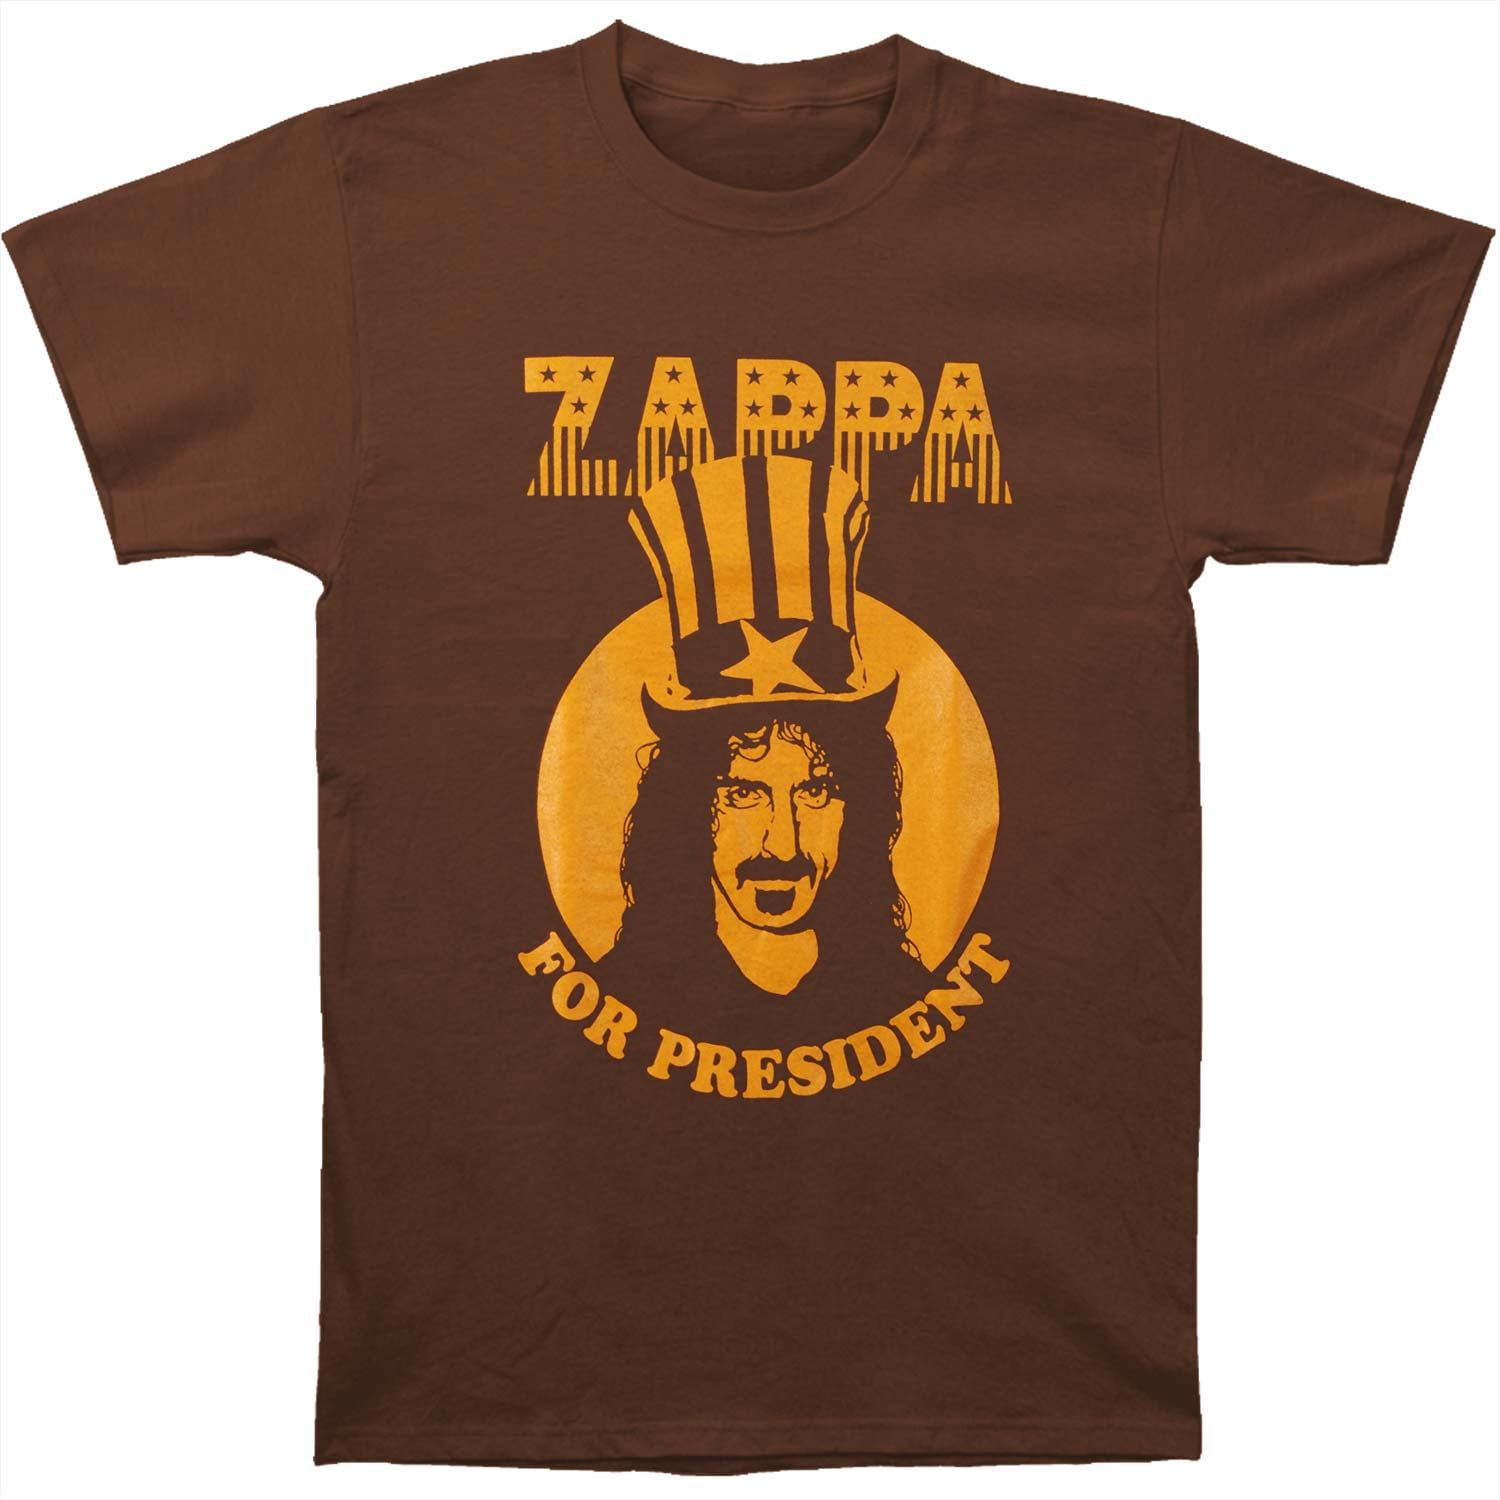 vejledning manipulere personificering Frank Zappa Men's President T-shirt Large Brown - Walmart.com